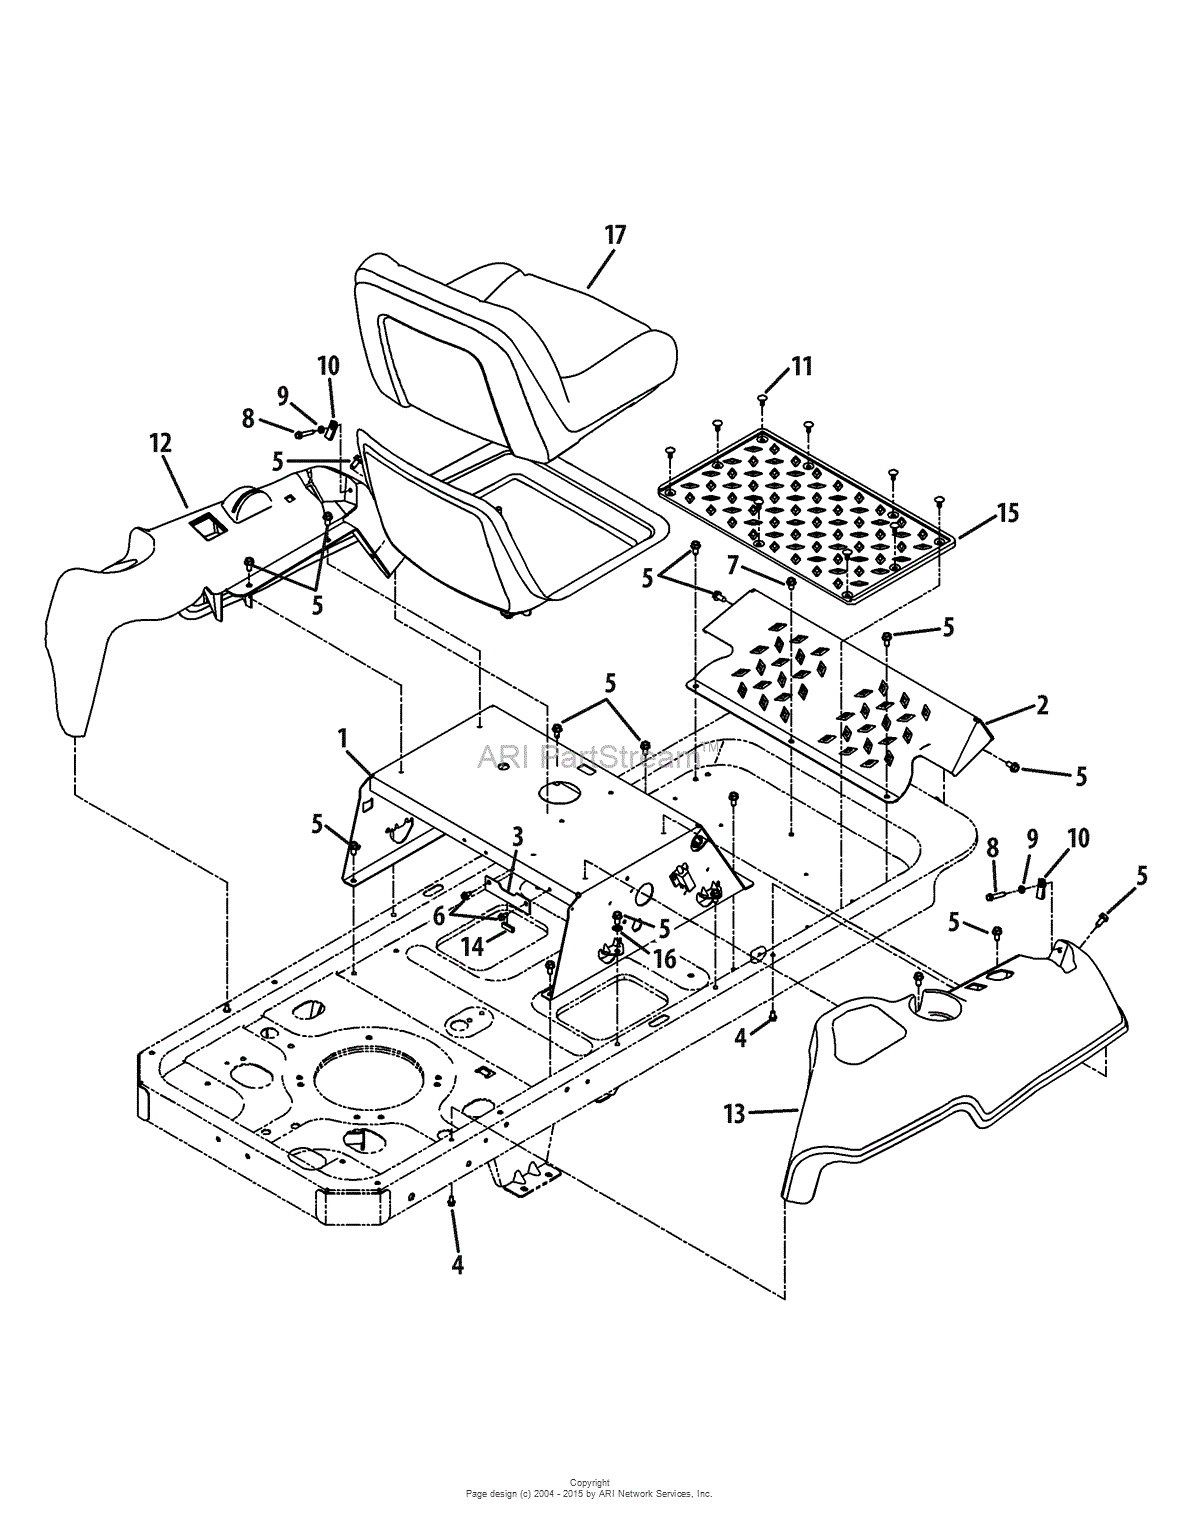 17af2acp004 wiring diagram